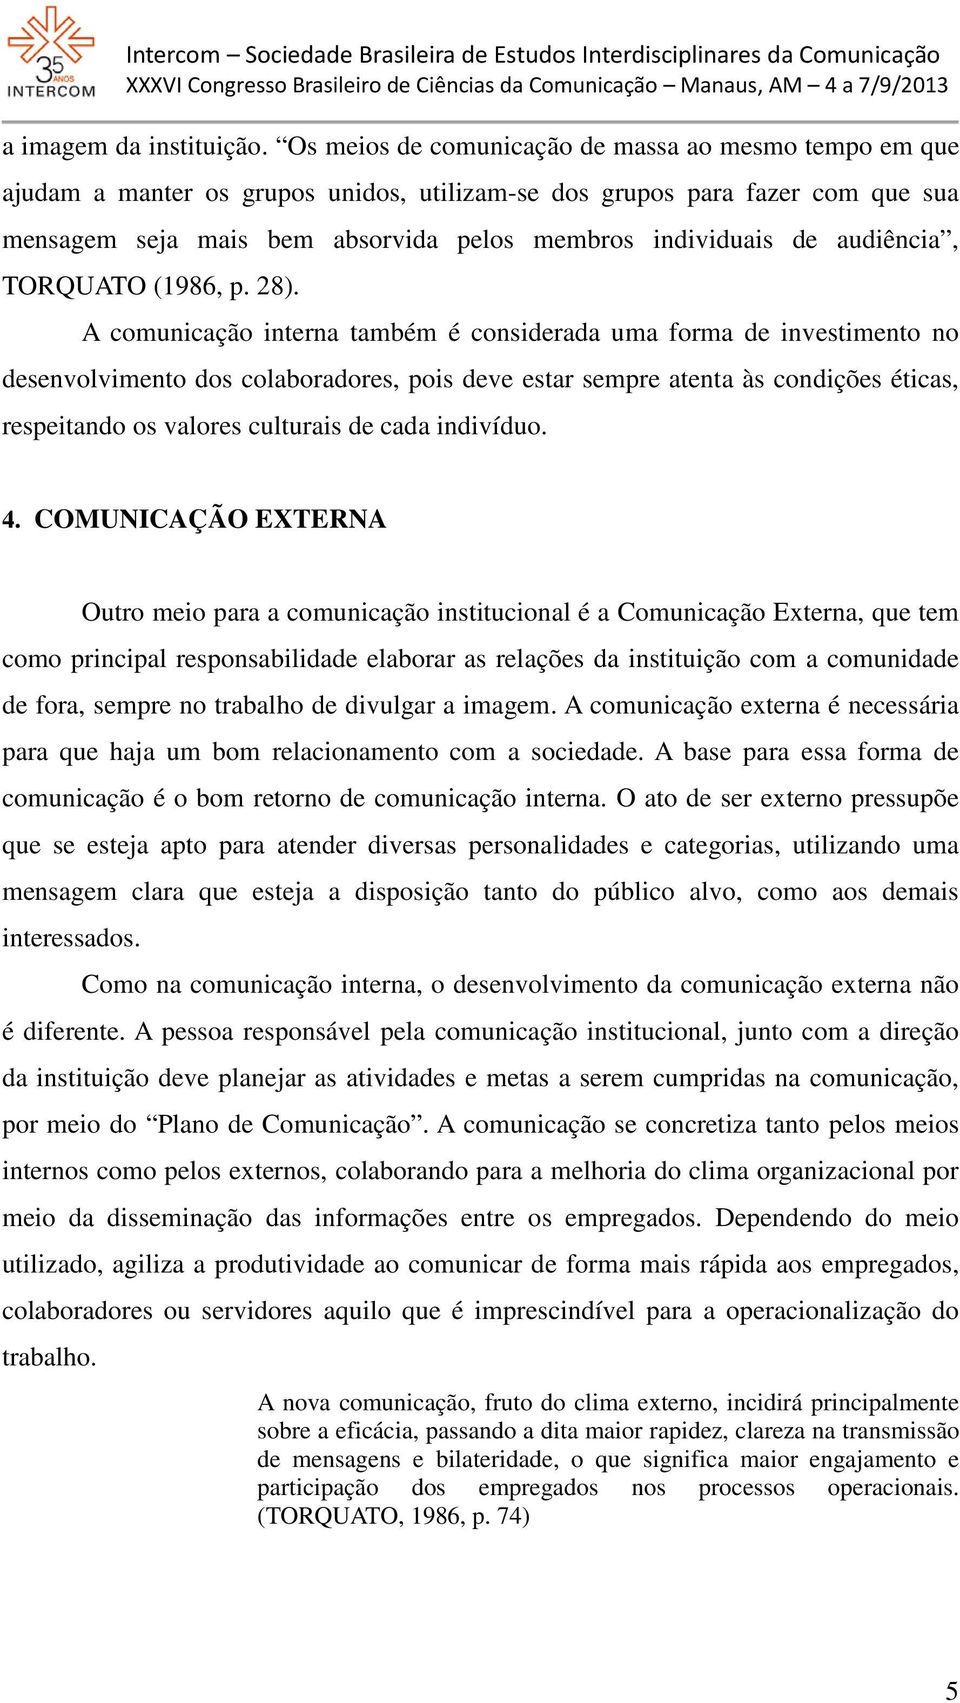 audiência, TORQUATO (1986, p. 28).